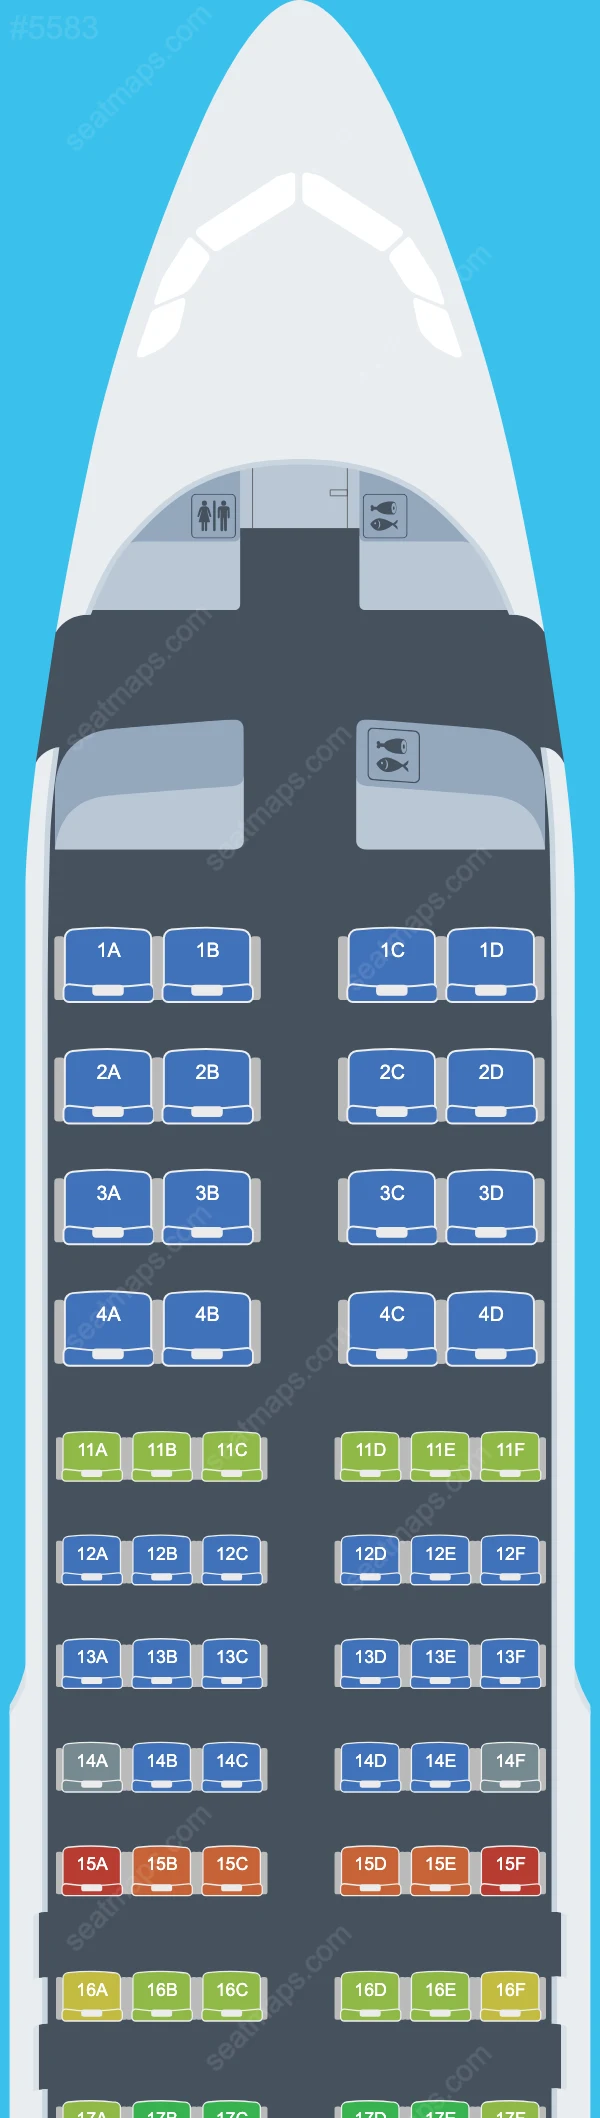 Air Astana Airbus A320 Seat Maps A320-200neo V.1